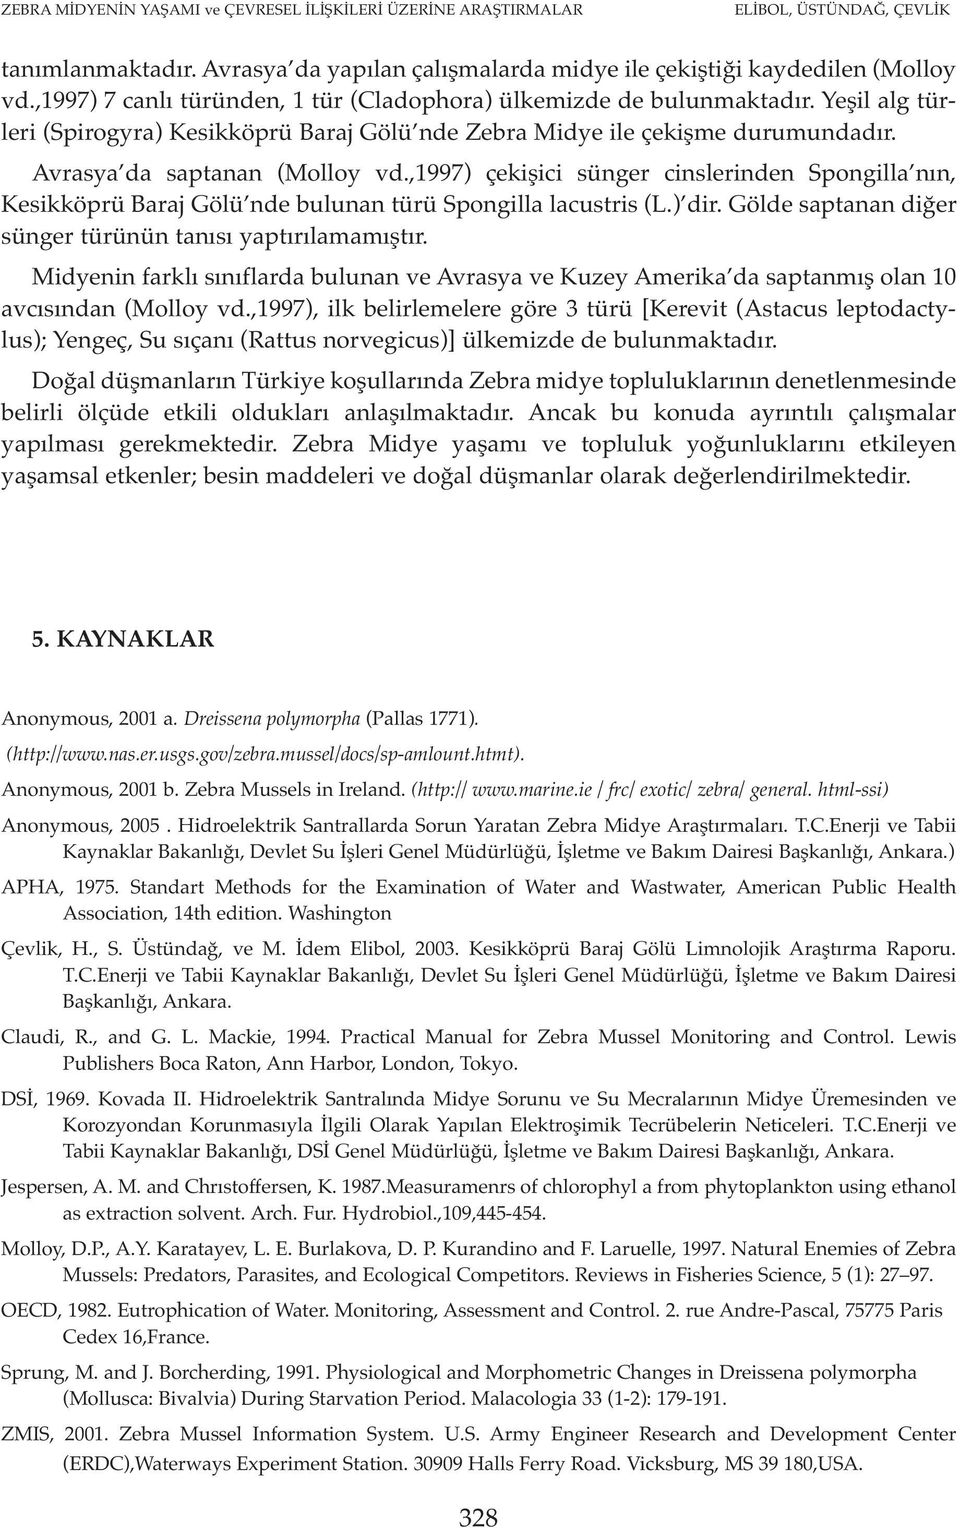 ,1997) çekişici sünger cinslerinden Spongilla nın, Kesikköprü Baraj Gölü nde bulunan türü Spongilla lacustris (L.) dir. Gölde saptanan diğer sünger türünün tanısı yaptırılamamıştır.